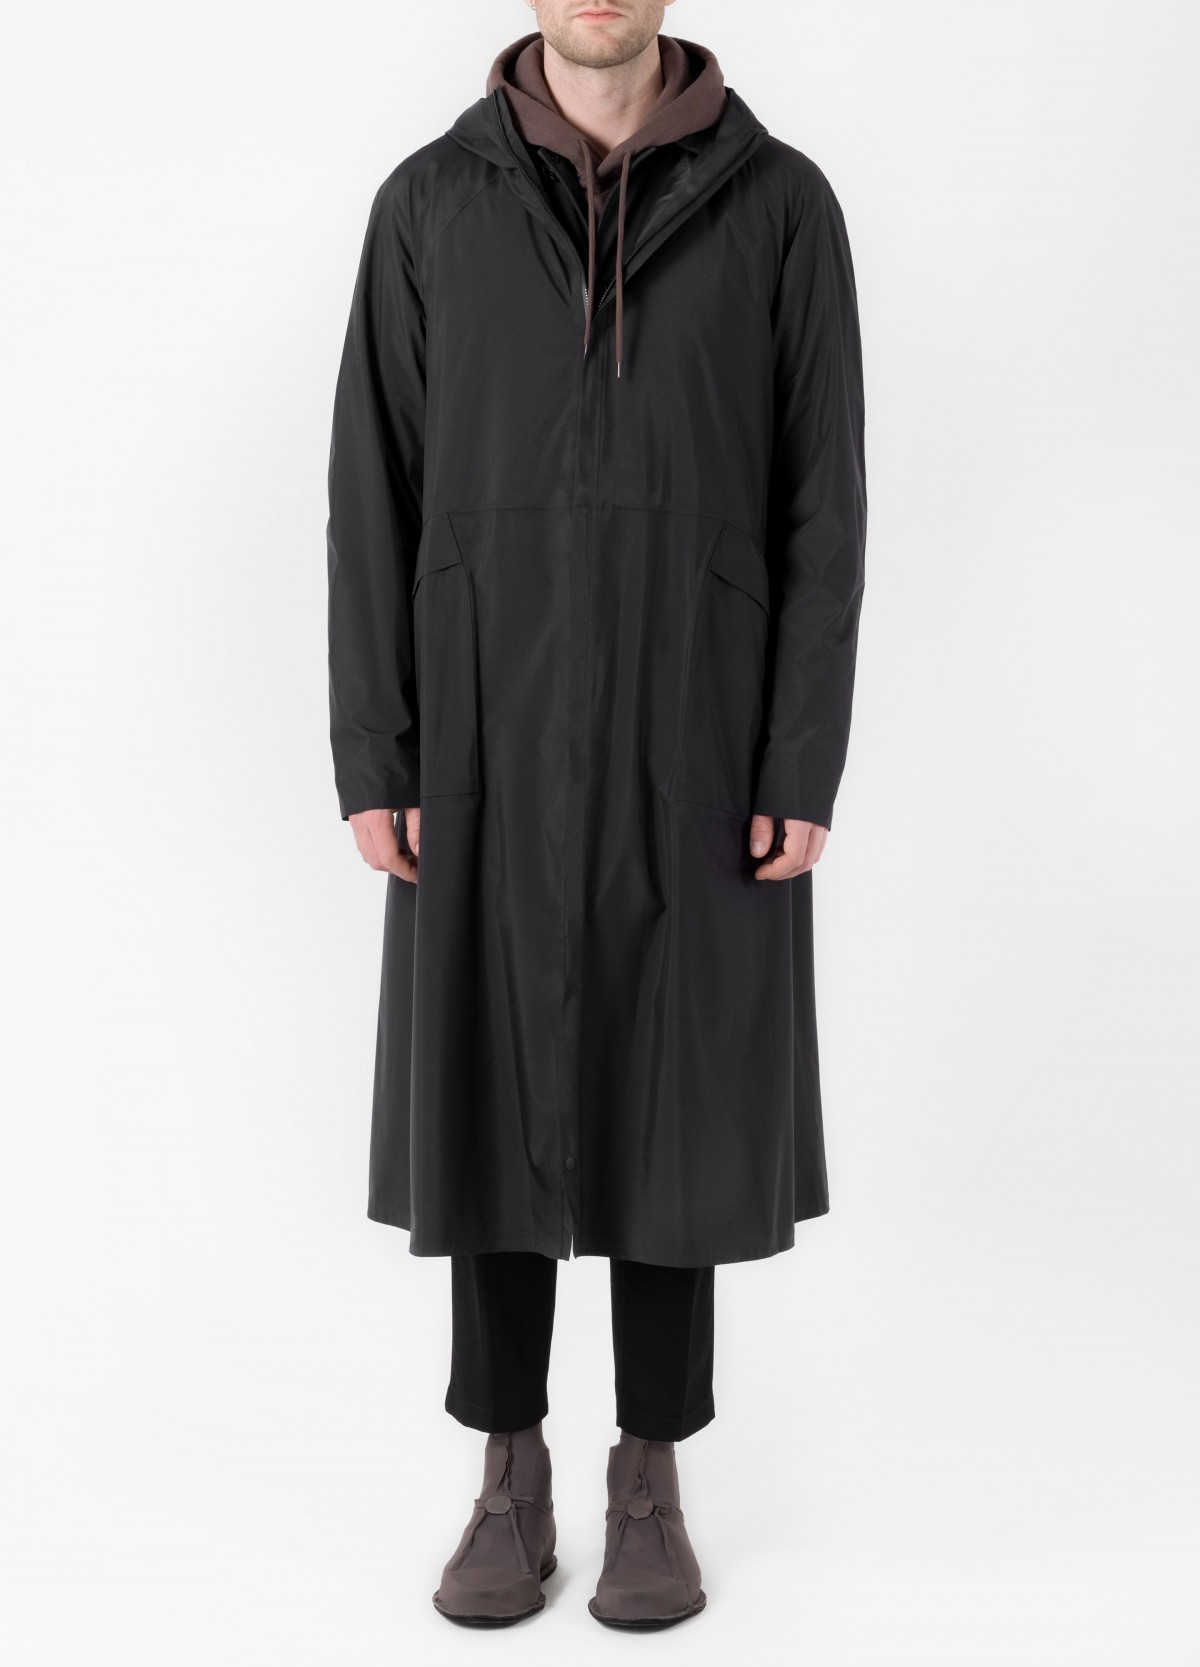 senscommon All-Commute Overcoat  in Black